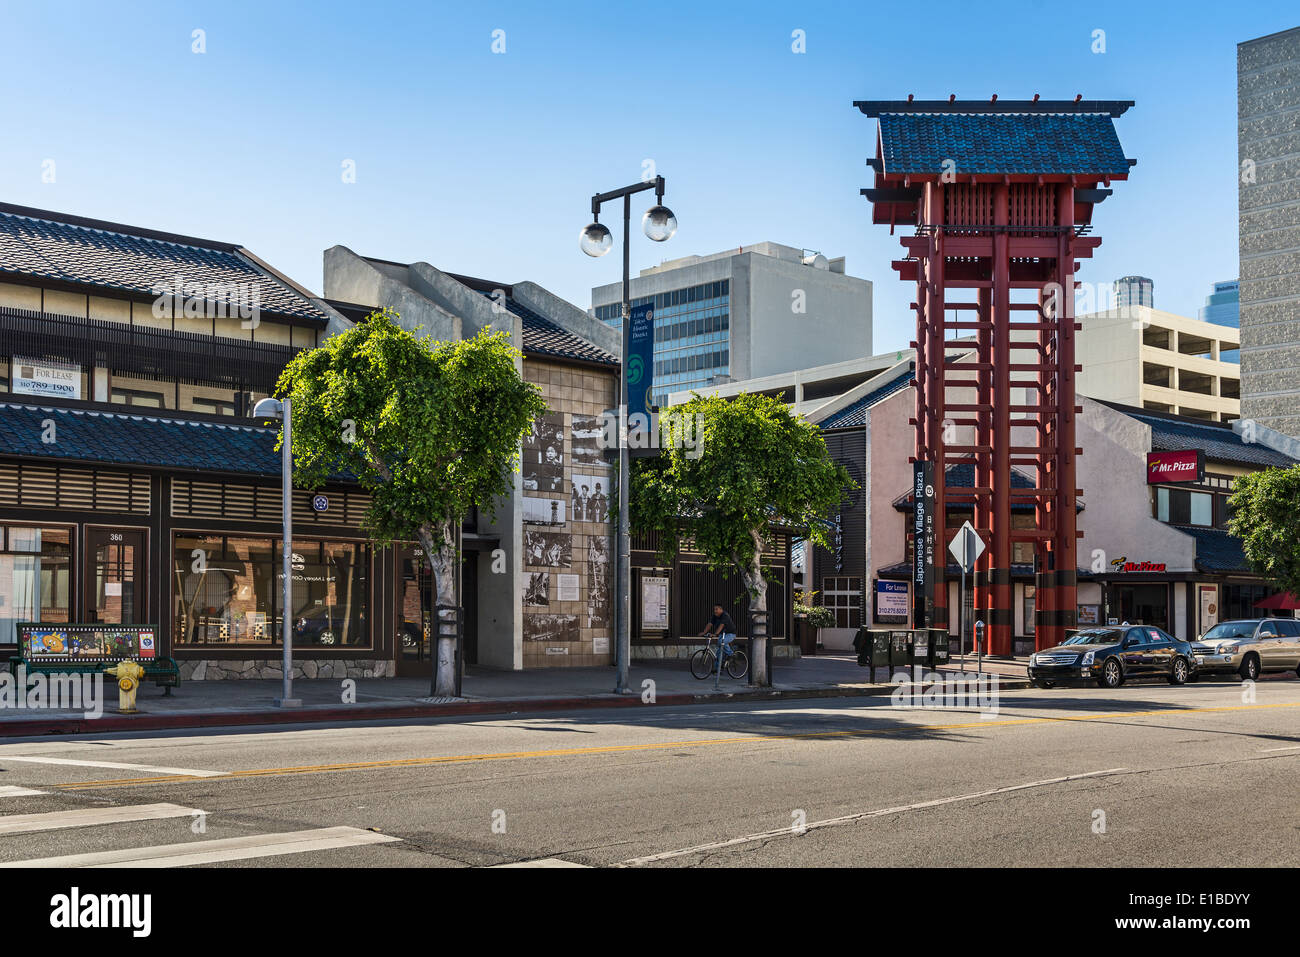 Little Tokyo situé dans le centre-ville de Los Angeles. Banque D'Images